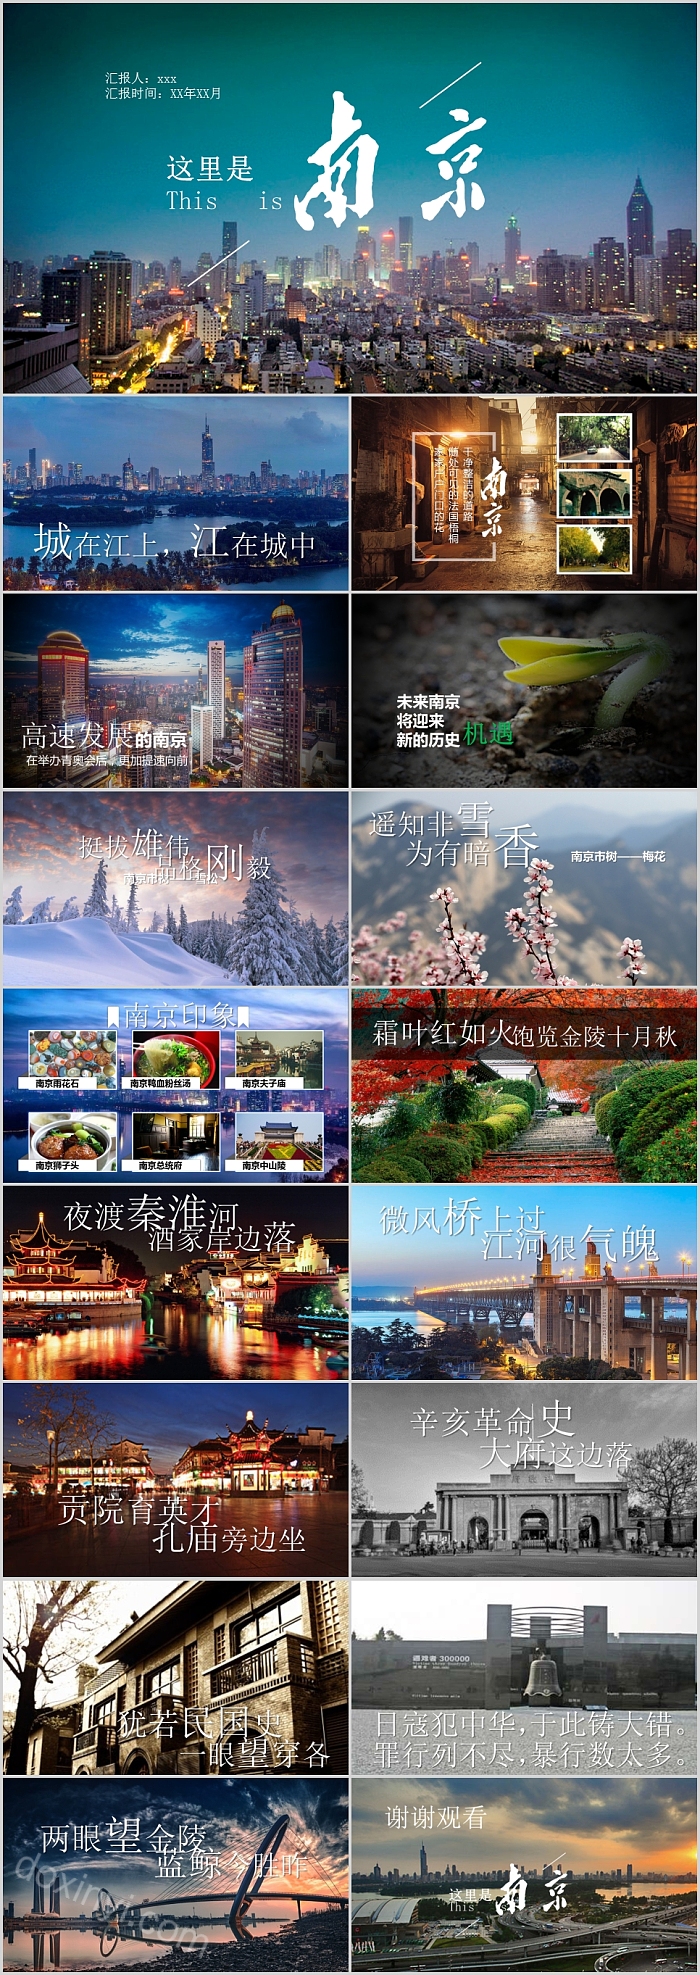 魅力南京旅游景点介绍旅游策划PPT